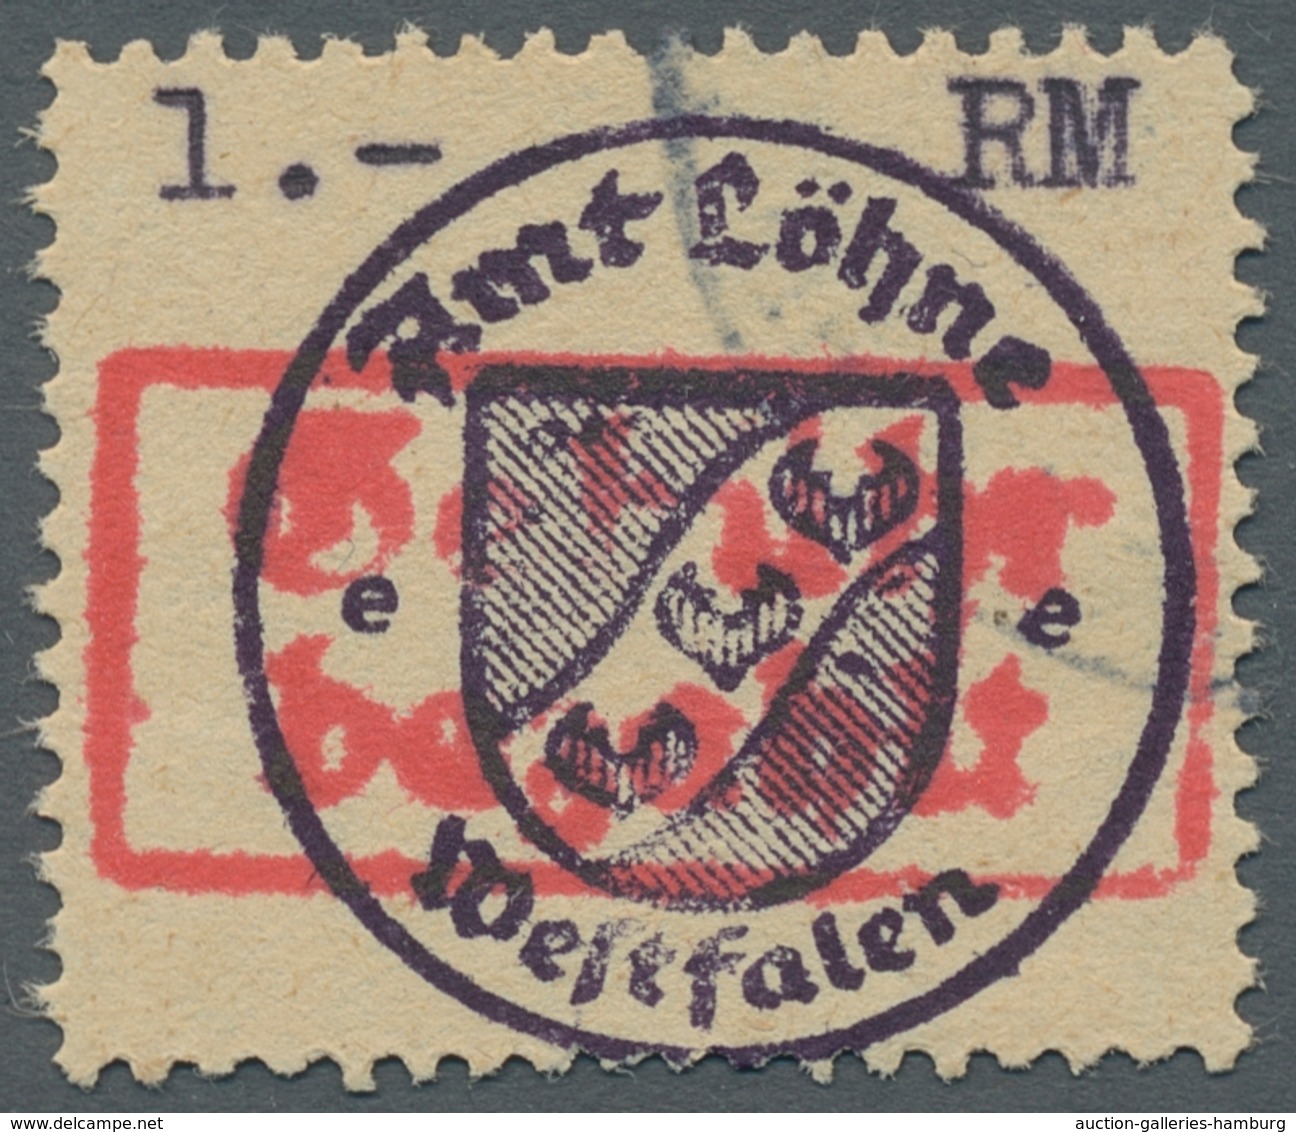 Deutsche Lokalausgaben ab 1945: 1945/1946, umfang- und inhaltsreiche postfrische (etwas auch ungebra